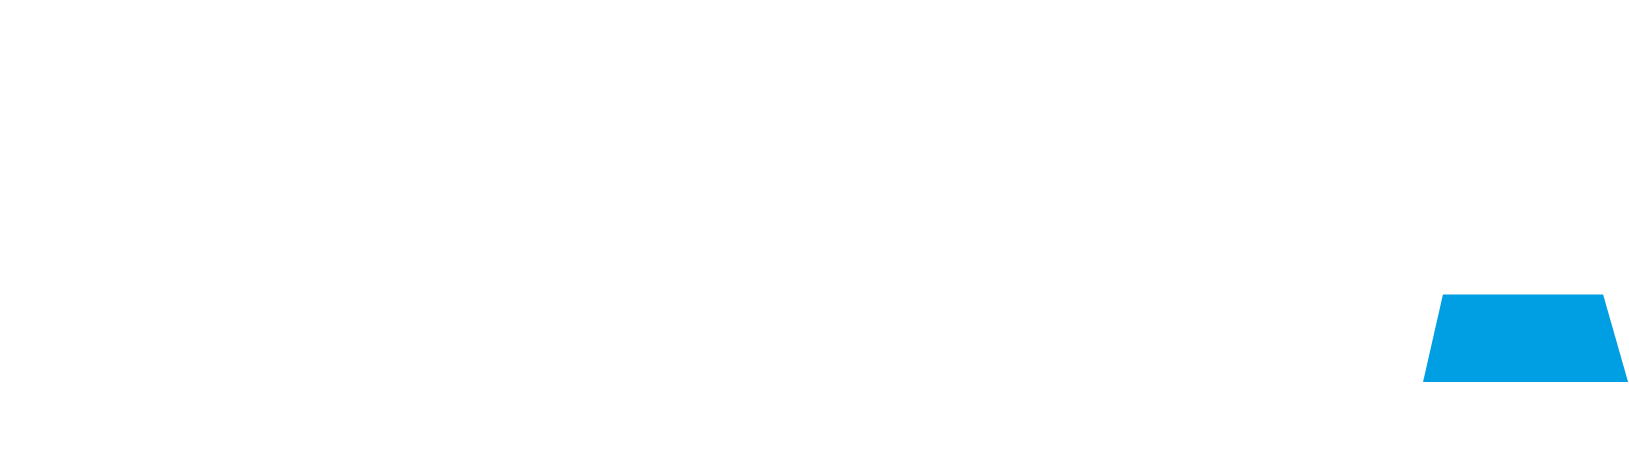 NEUCA logo large for dark backgrounds (transparent PNG)